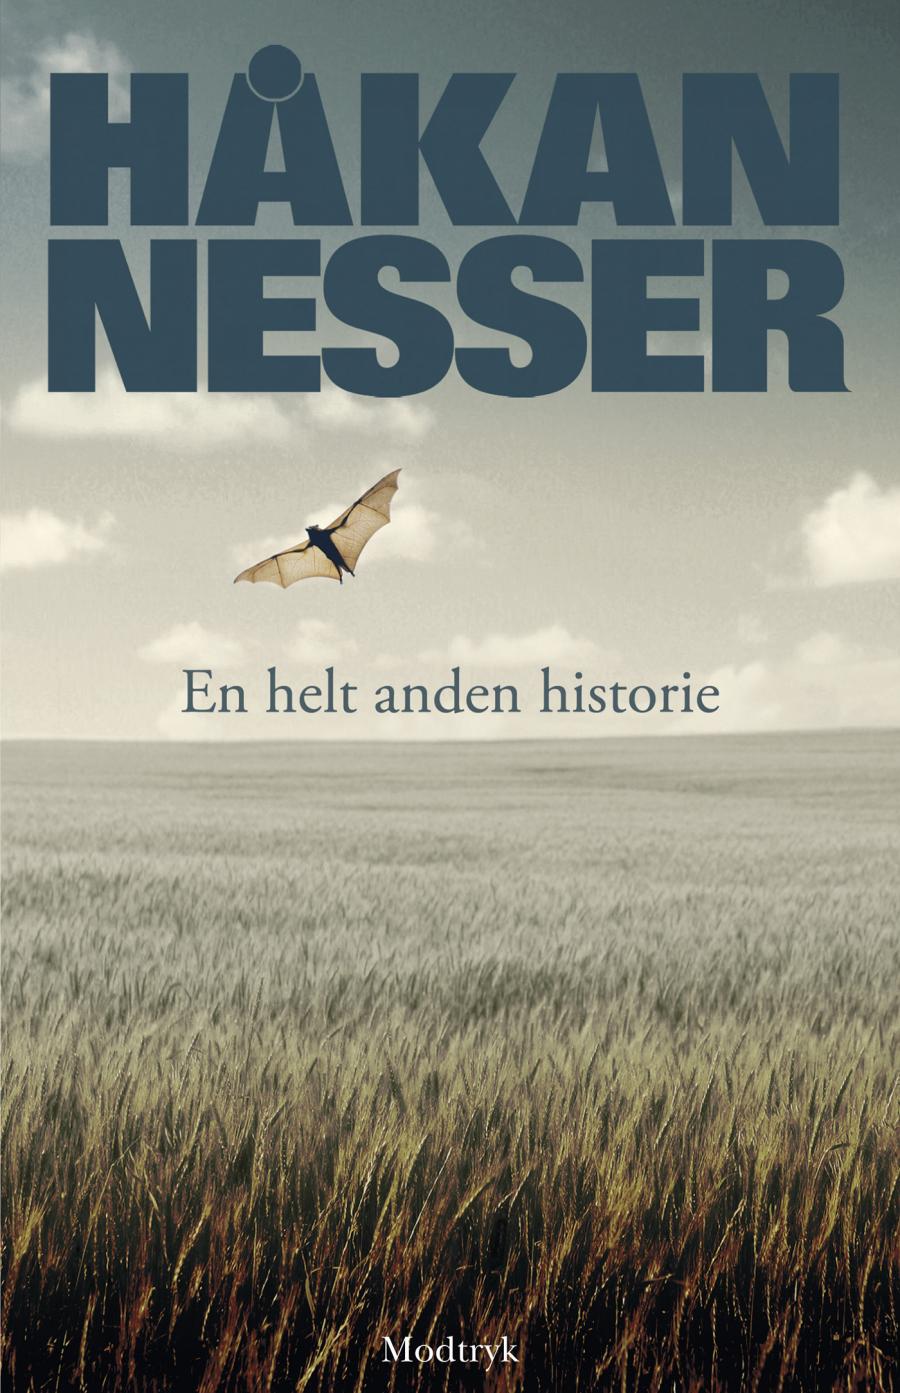 En helt anden historie af Håkan Nesser